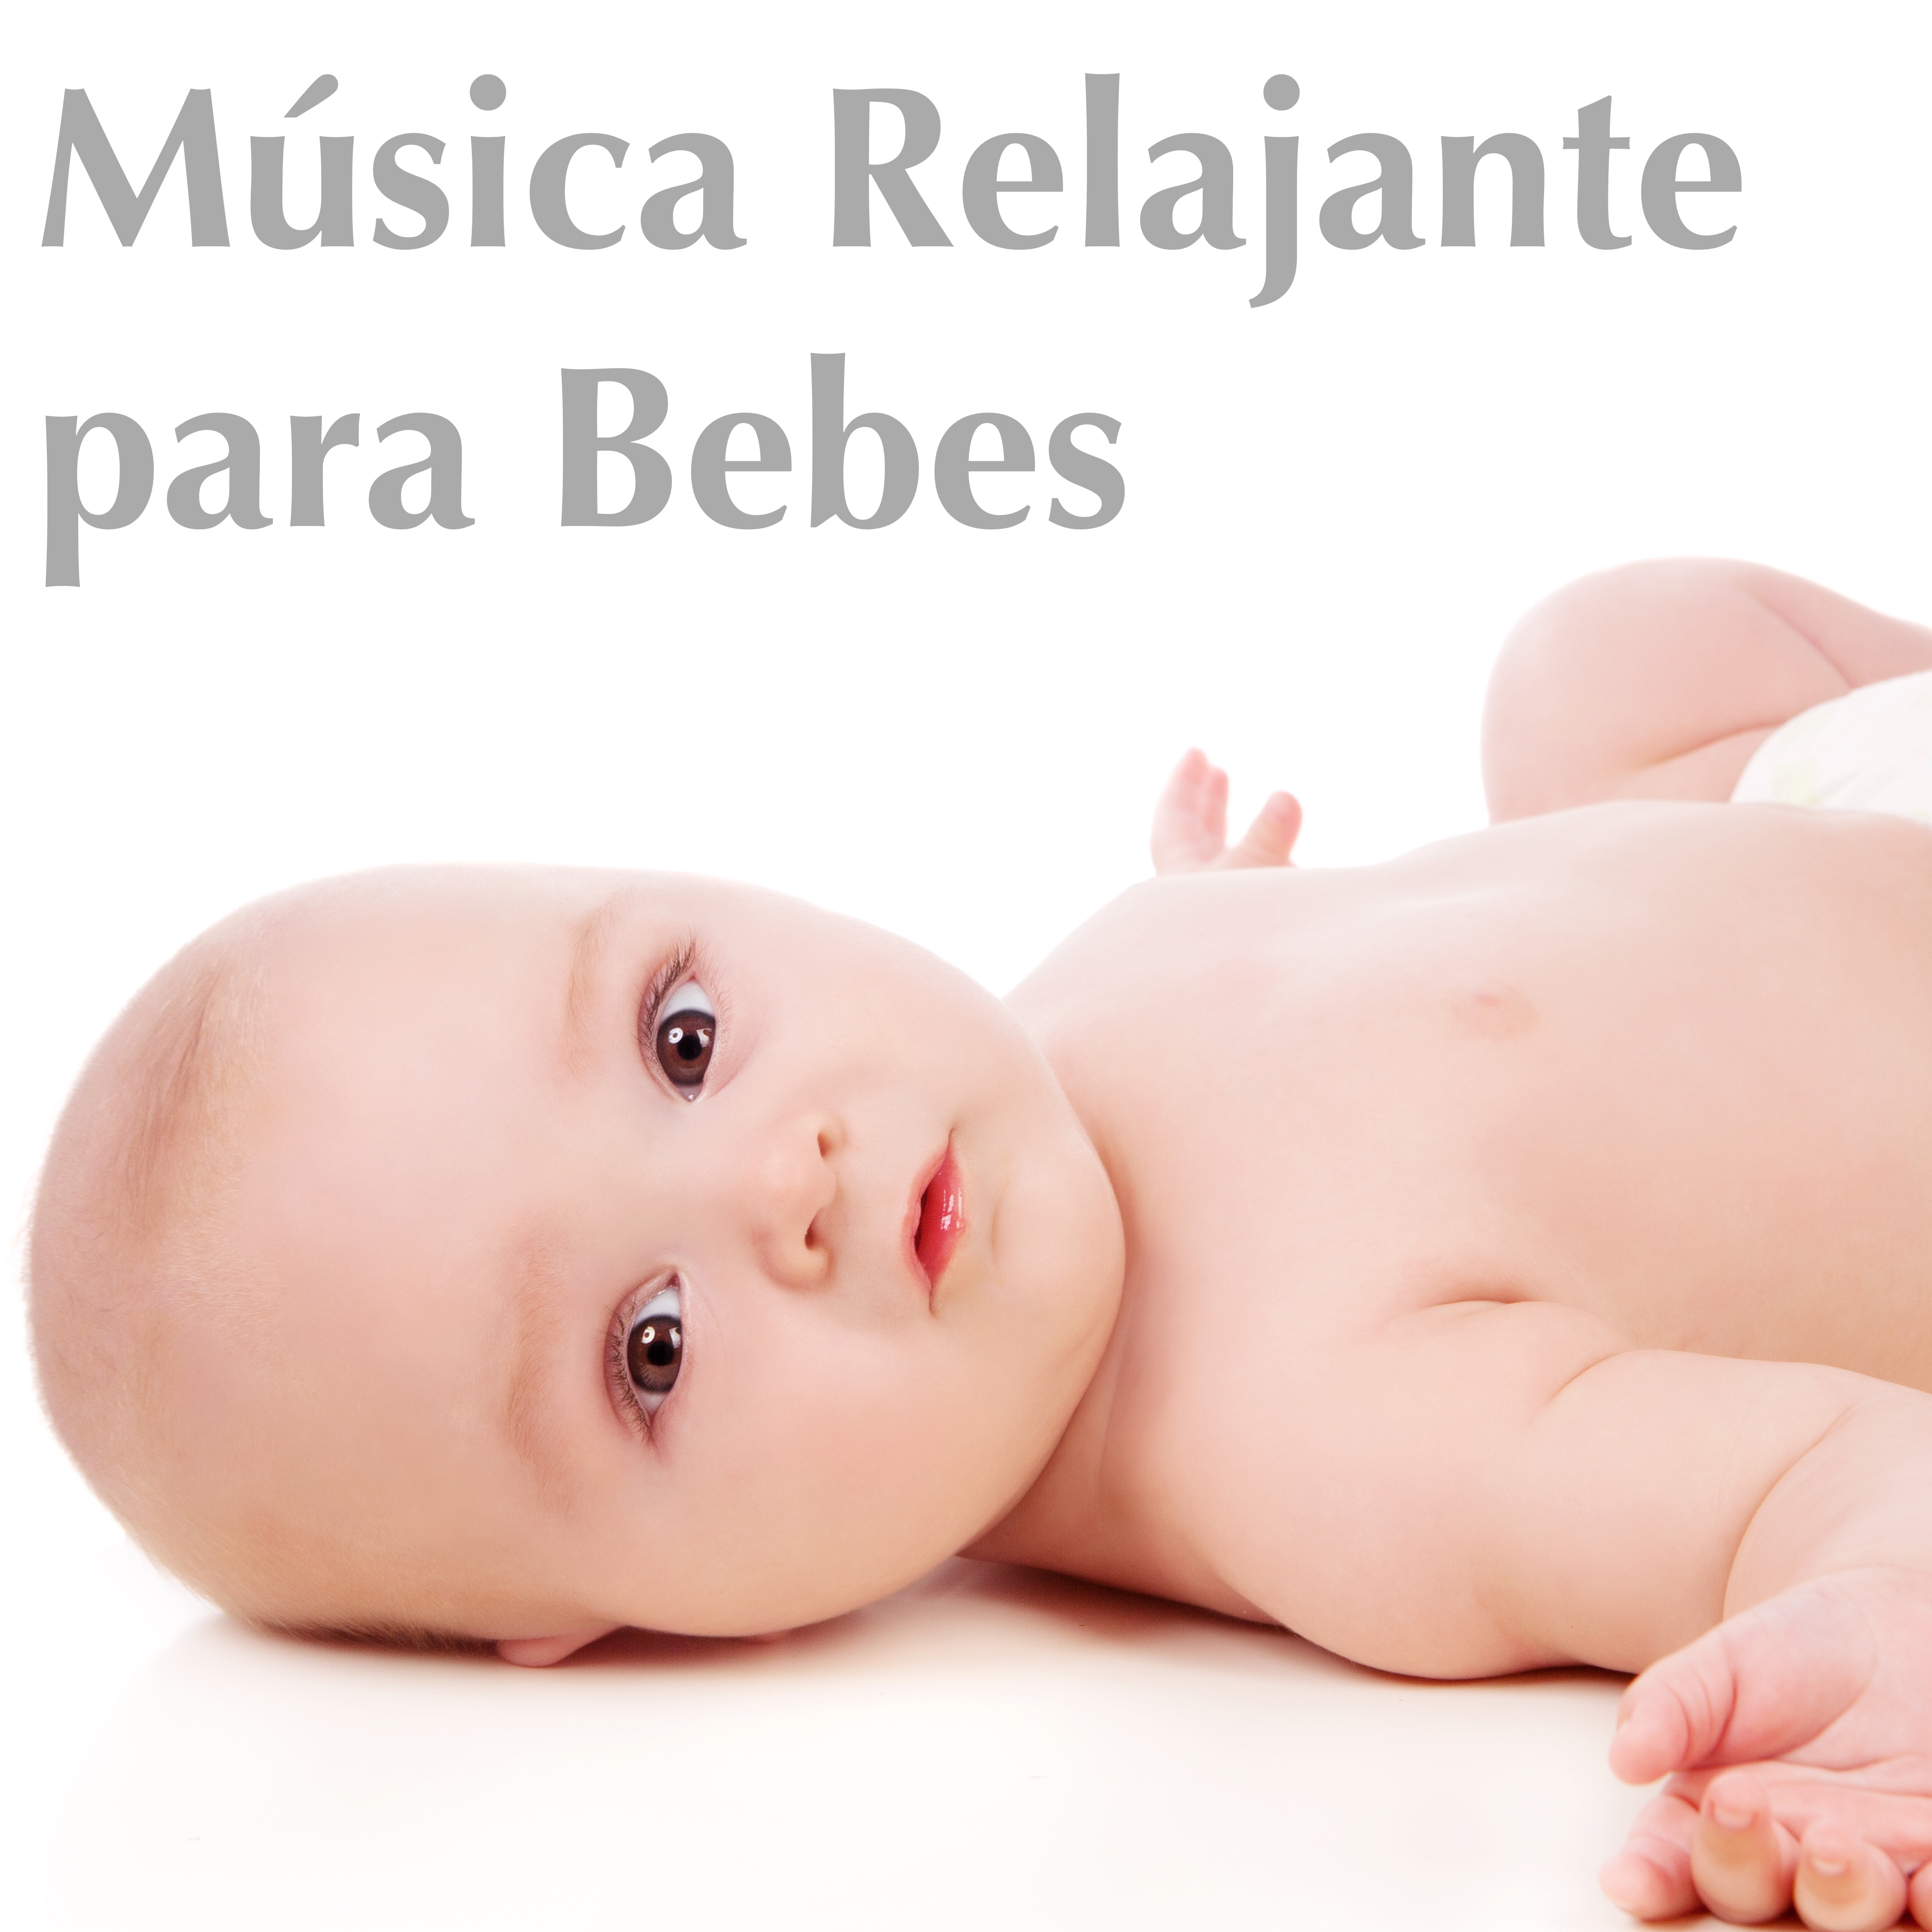 Mu sica Relajante para Bebes: Musicoterapia para Infantes, Canciones para Calmar los Ni os y Dormir Bien